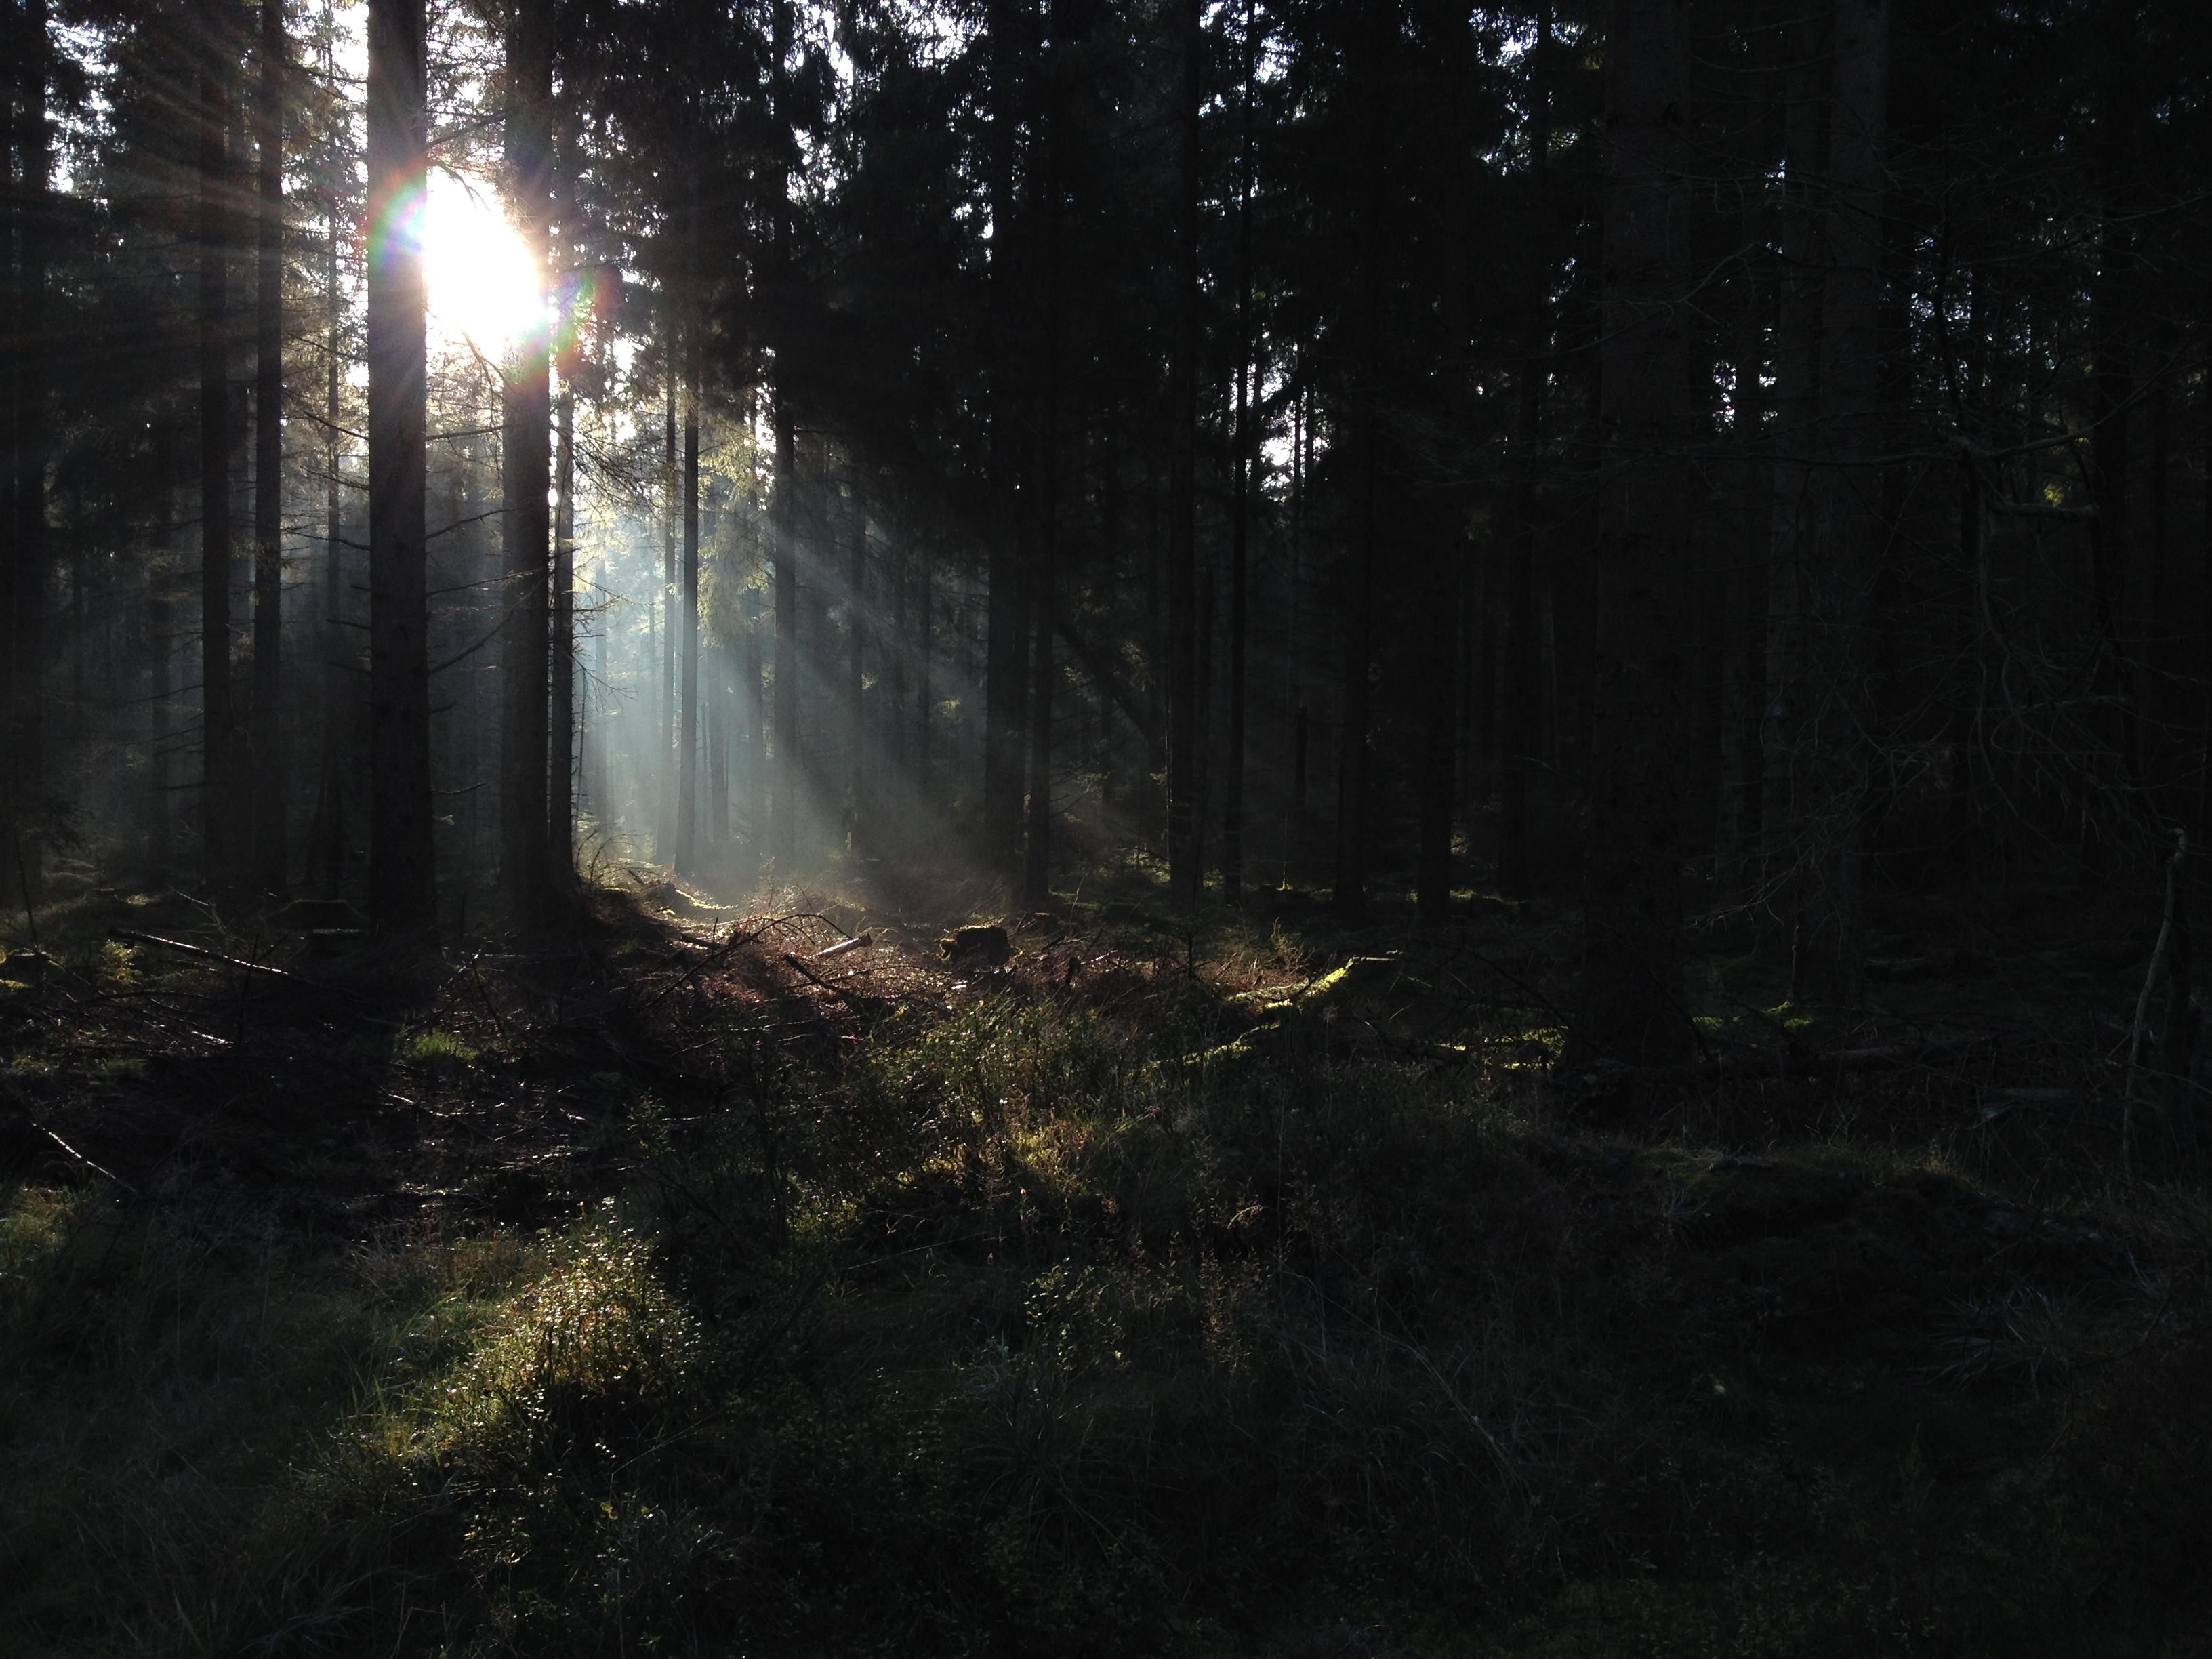 The light creeping through the trees - Clocaenog, Wales